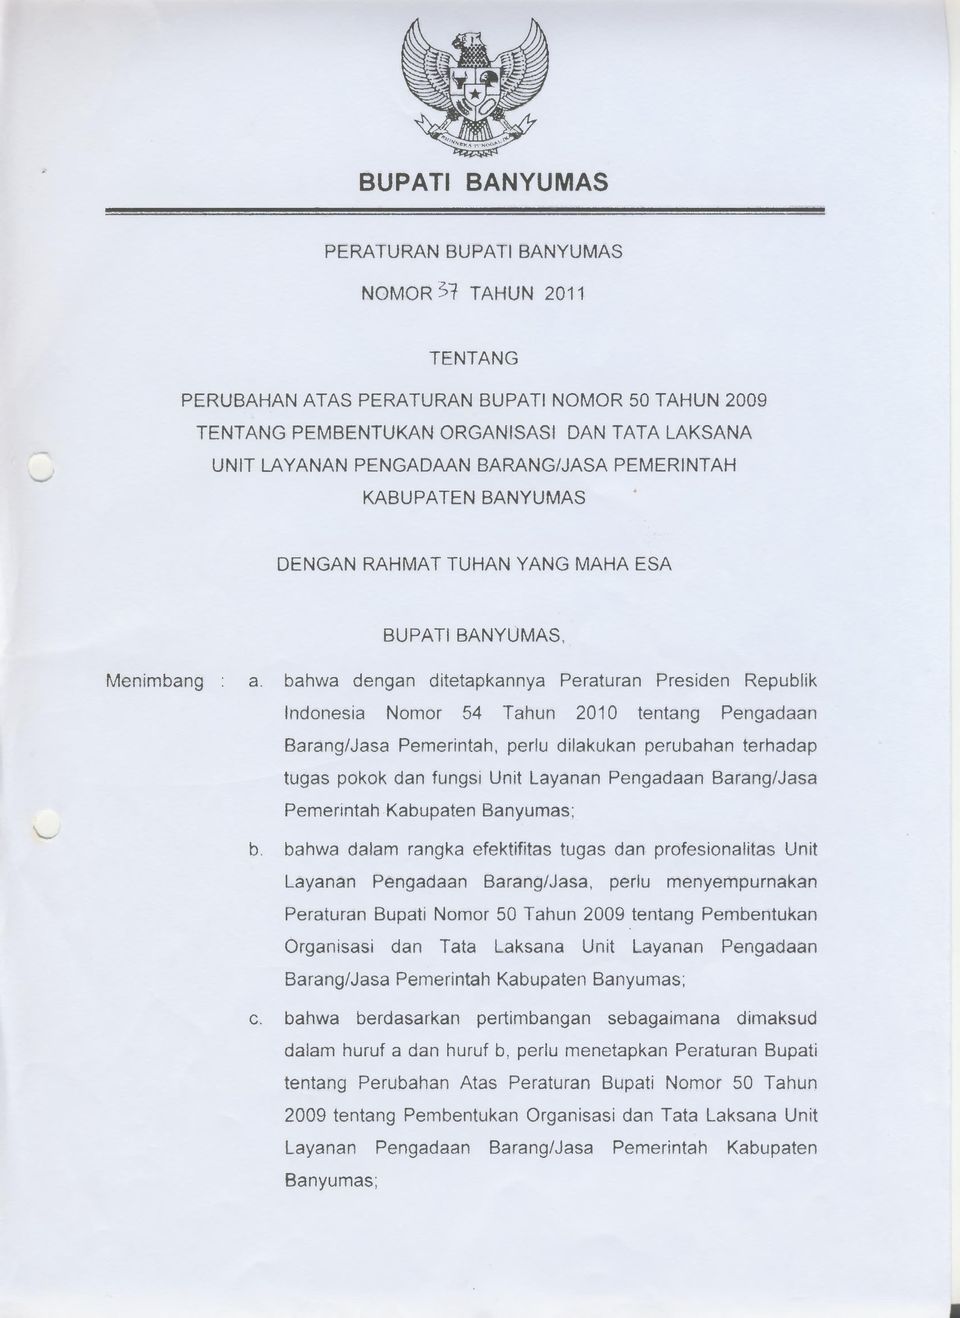 bahwa dengan ditetapkannya Peraturan Presiden Republik Indonesia Nomor 54 Tahun 2010 tentang Pengadaan Barang/Jasa Pemerintah, perlu dilakukan perubahan terhadap tugas pokok dan fungsi Unit Layanan